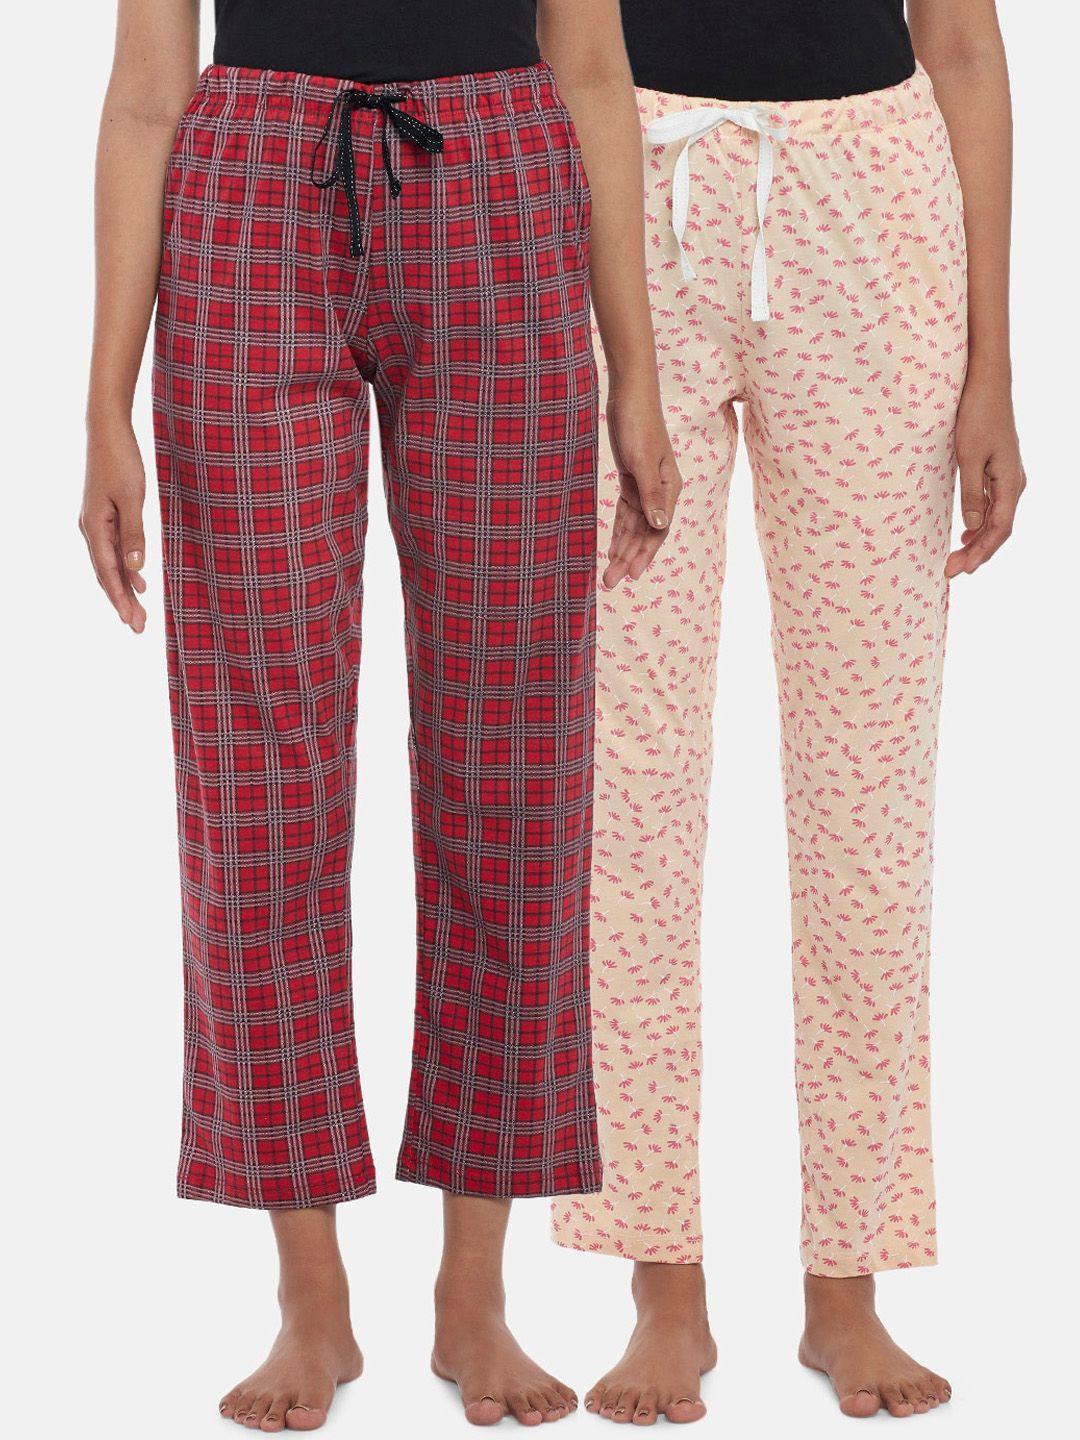 dreamz by pantaloons women set of 2 cotton lounge pants